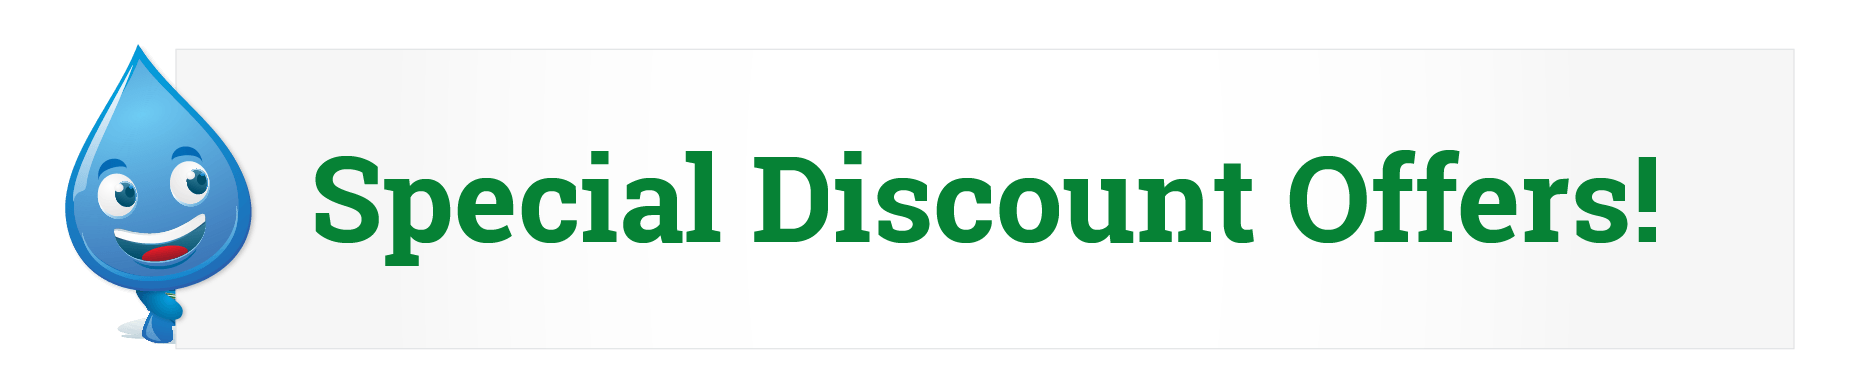 Drippy Discount Banner